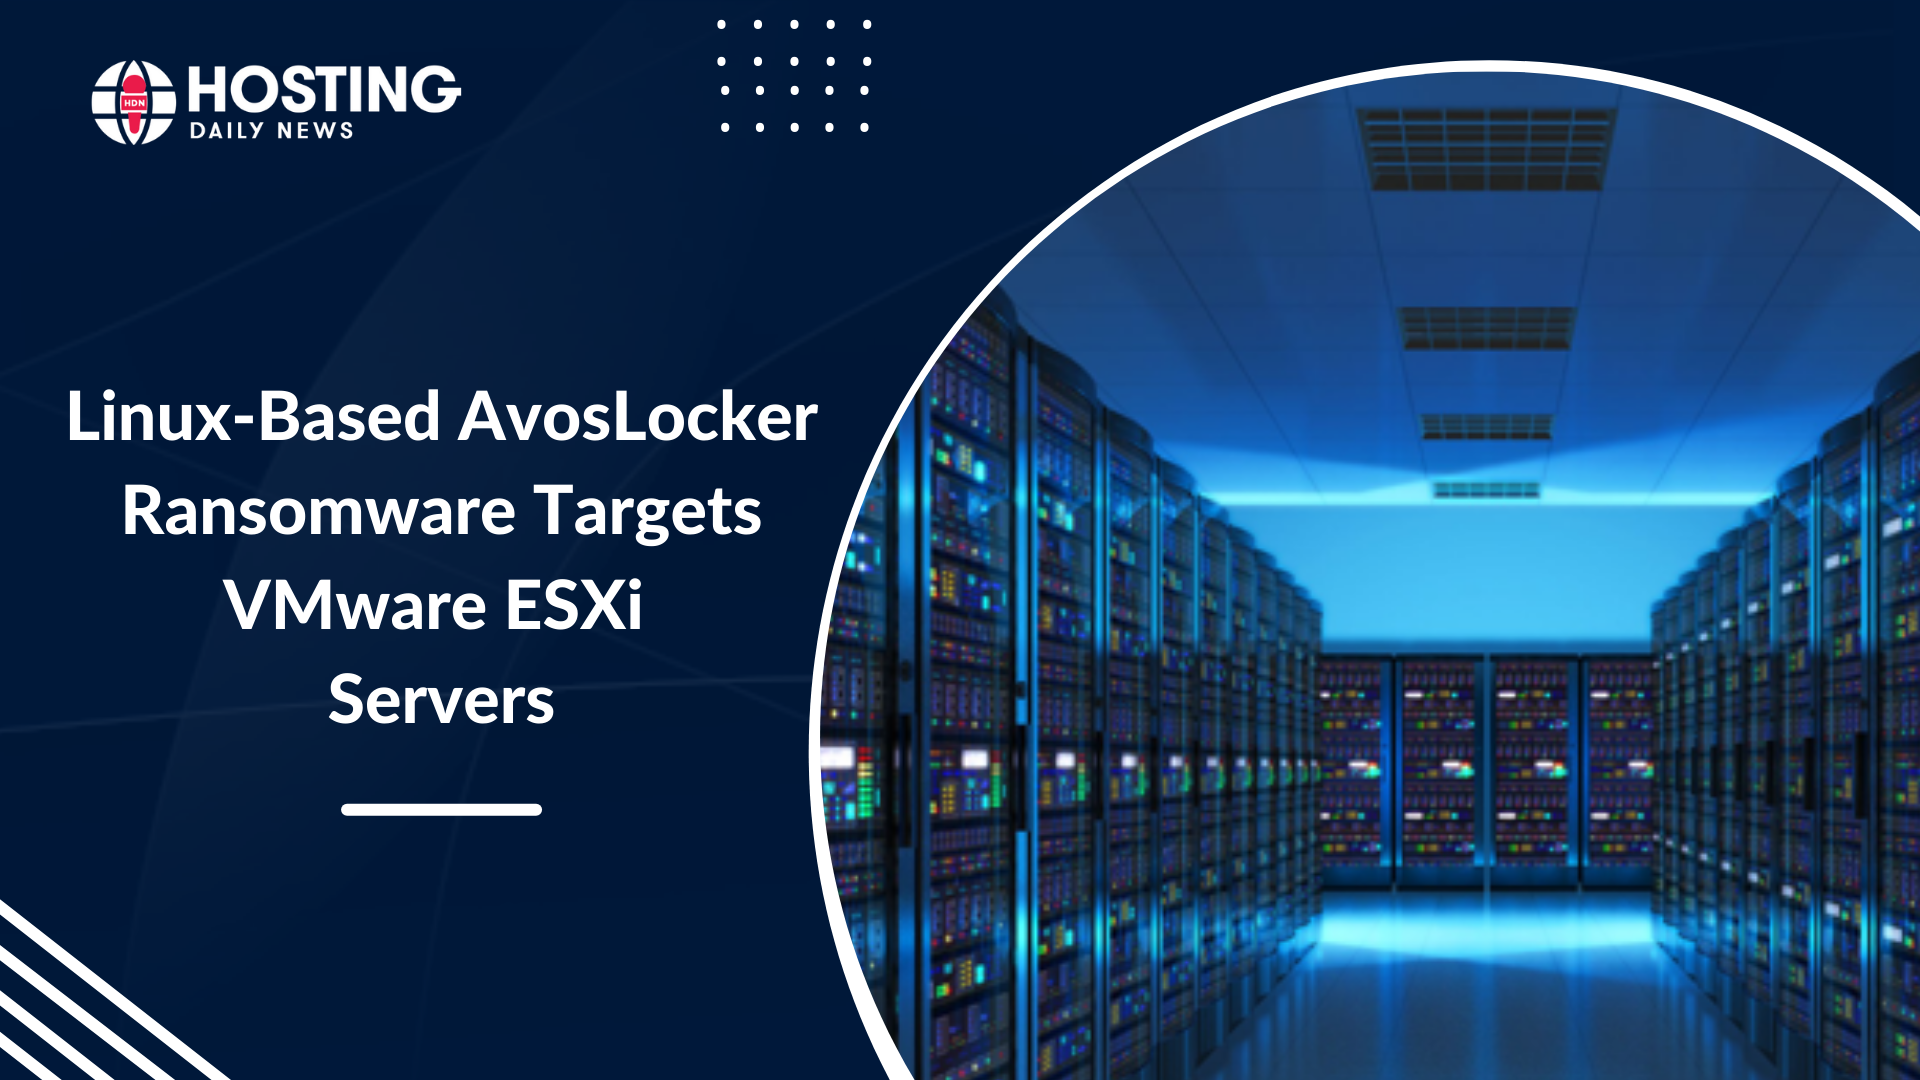  New Linux-Based Variant For AvosLocker Ransomware Aims At VMware ESXi Servers